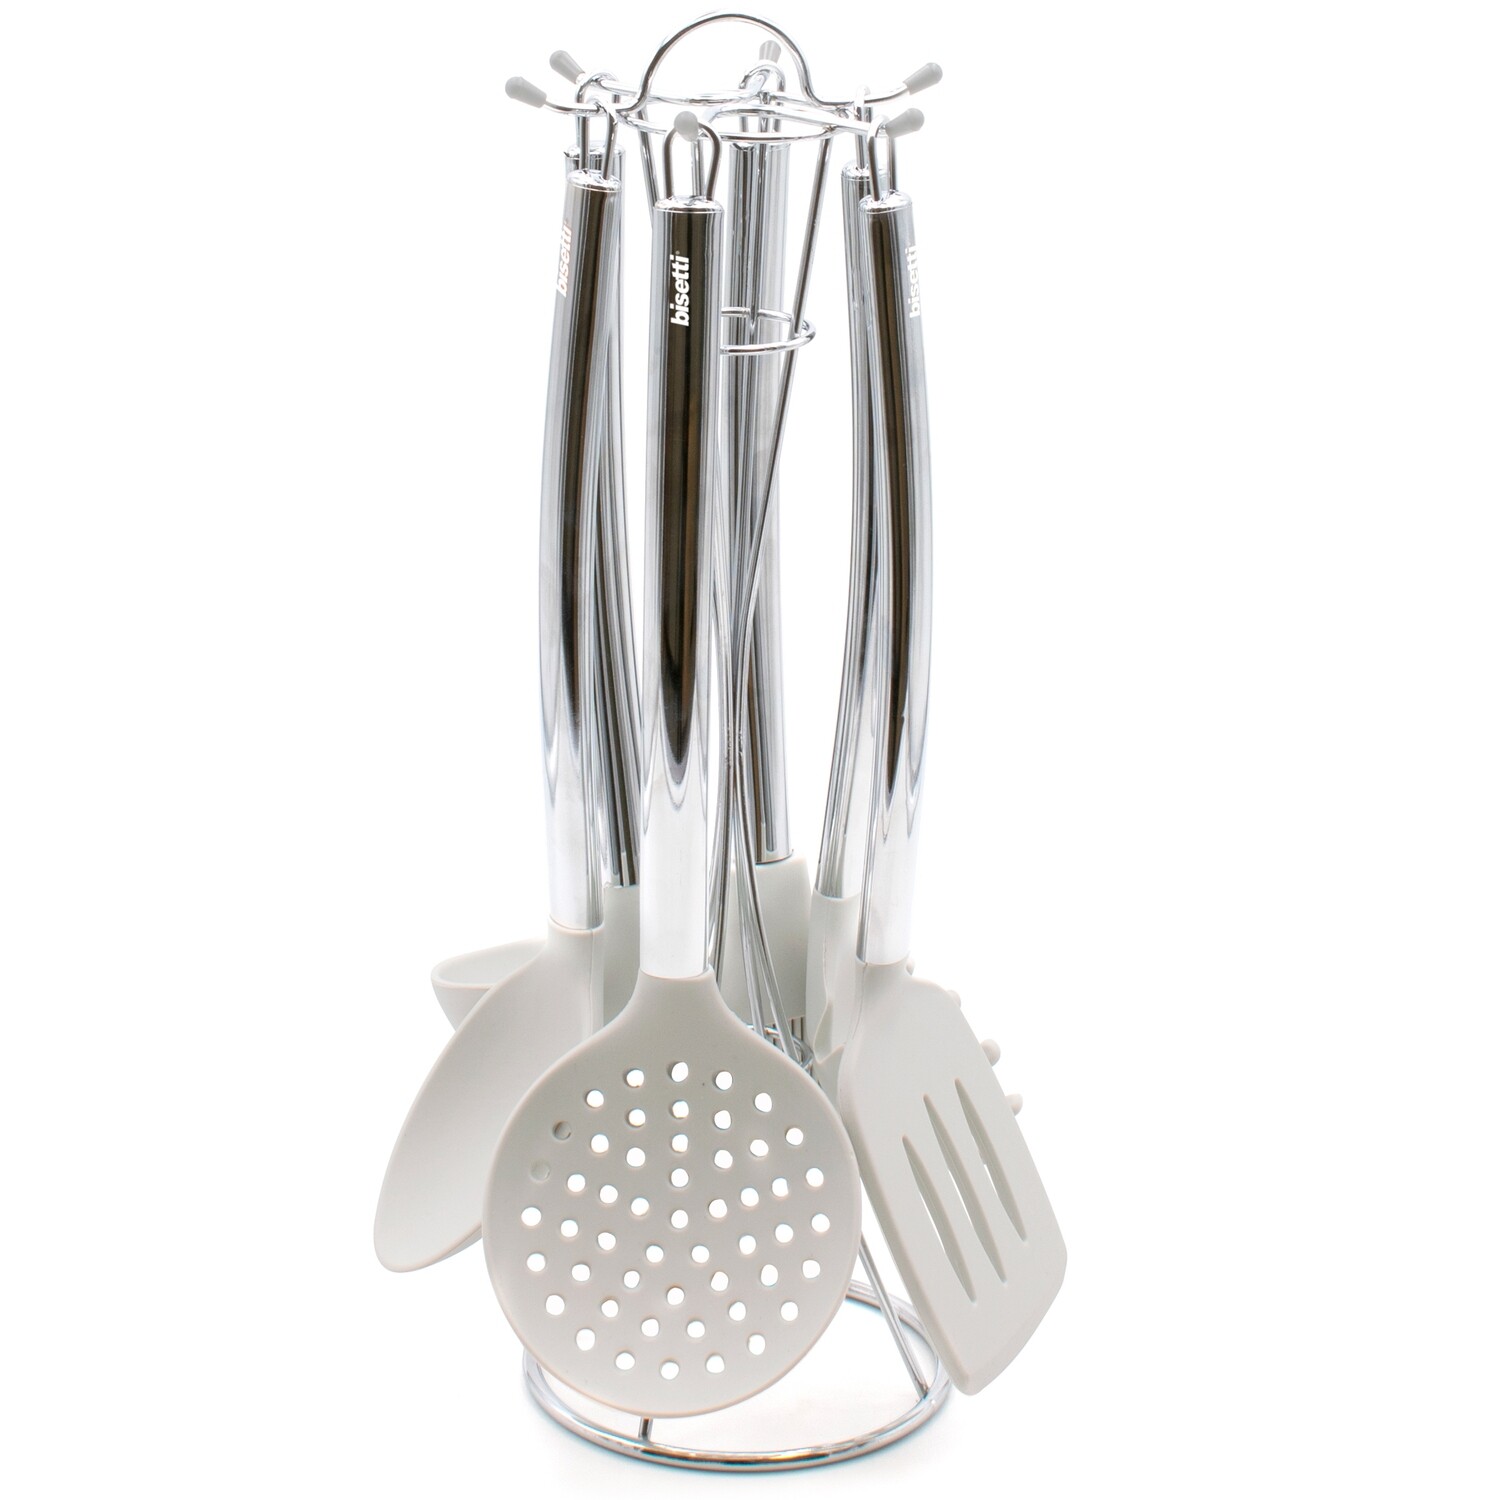 Set 6 pezzi utensili da cucina in silicone Stone White con supporto in metallo.